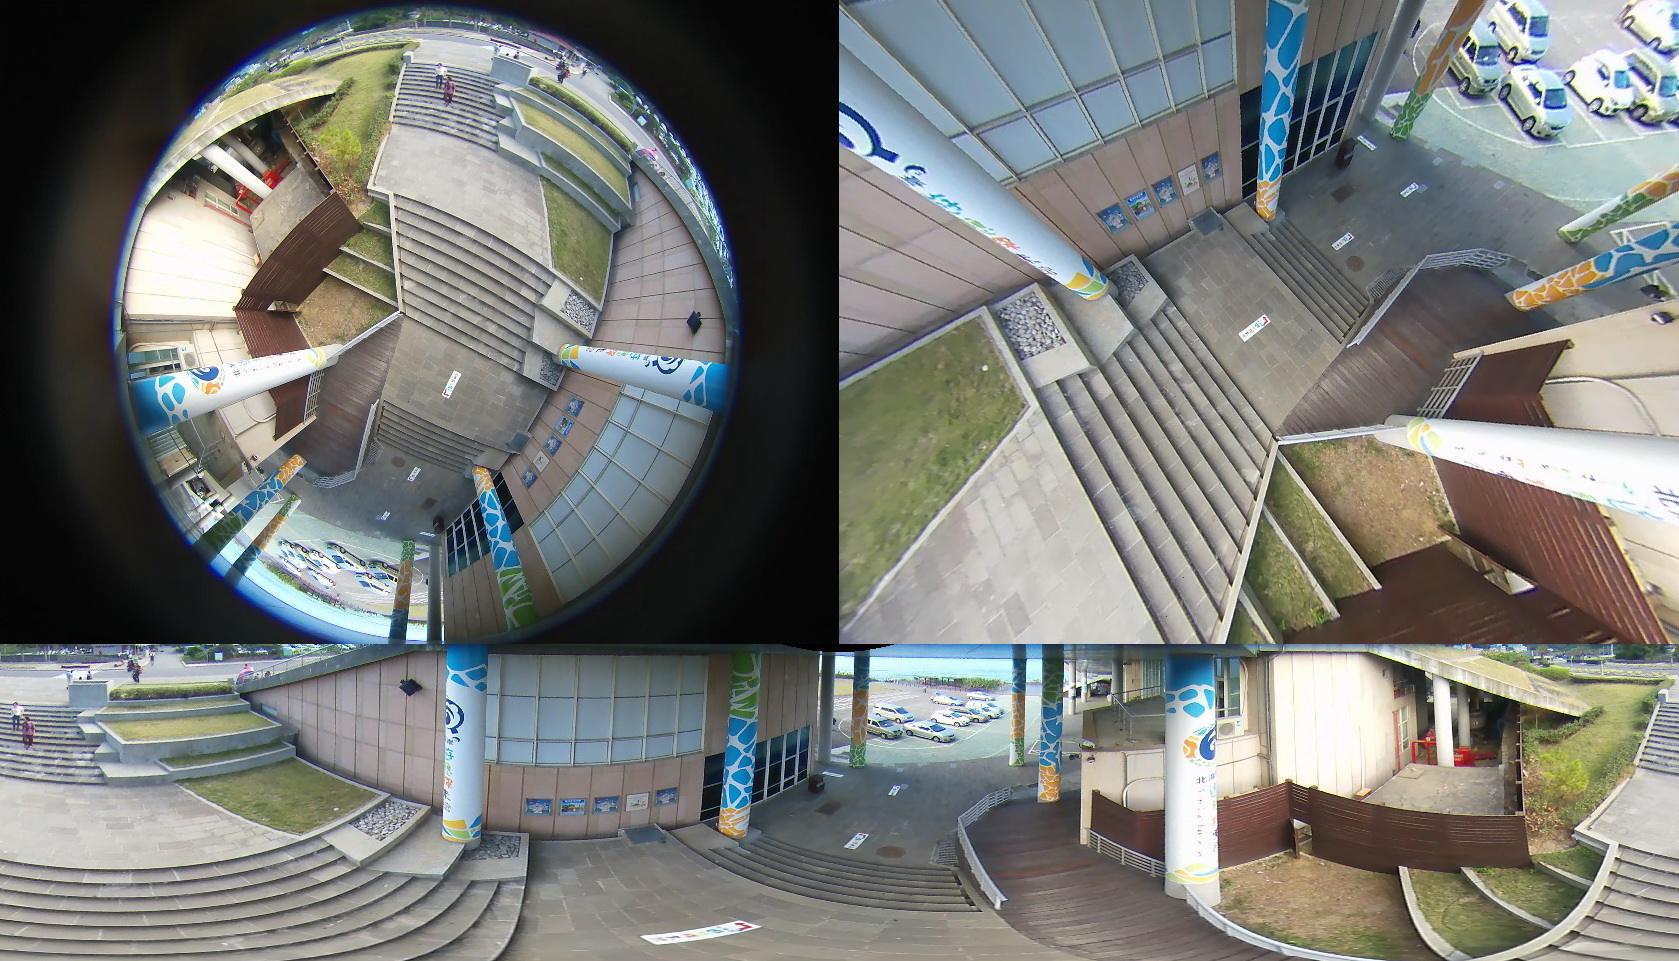 120组摄像机镜头动画预设库合集 各种3D软件通用 - CG素材岛